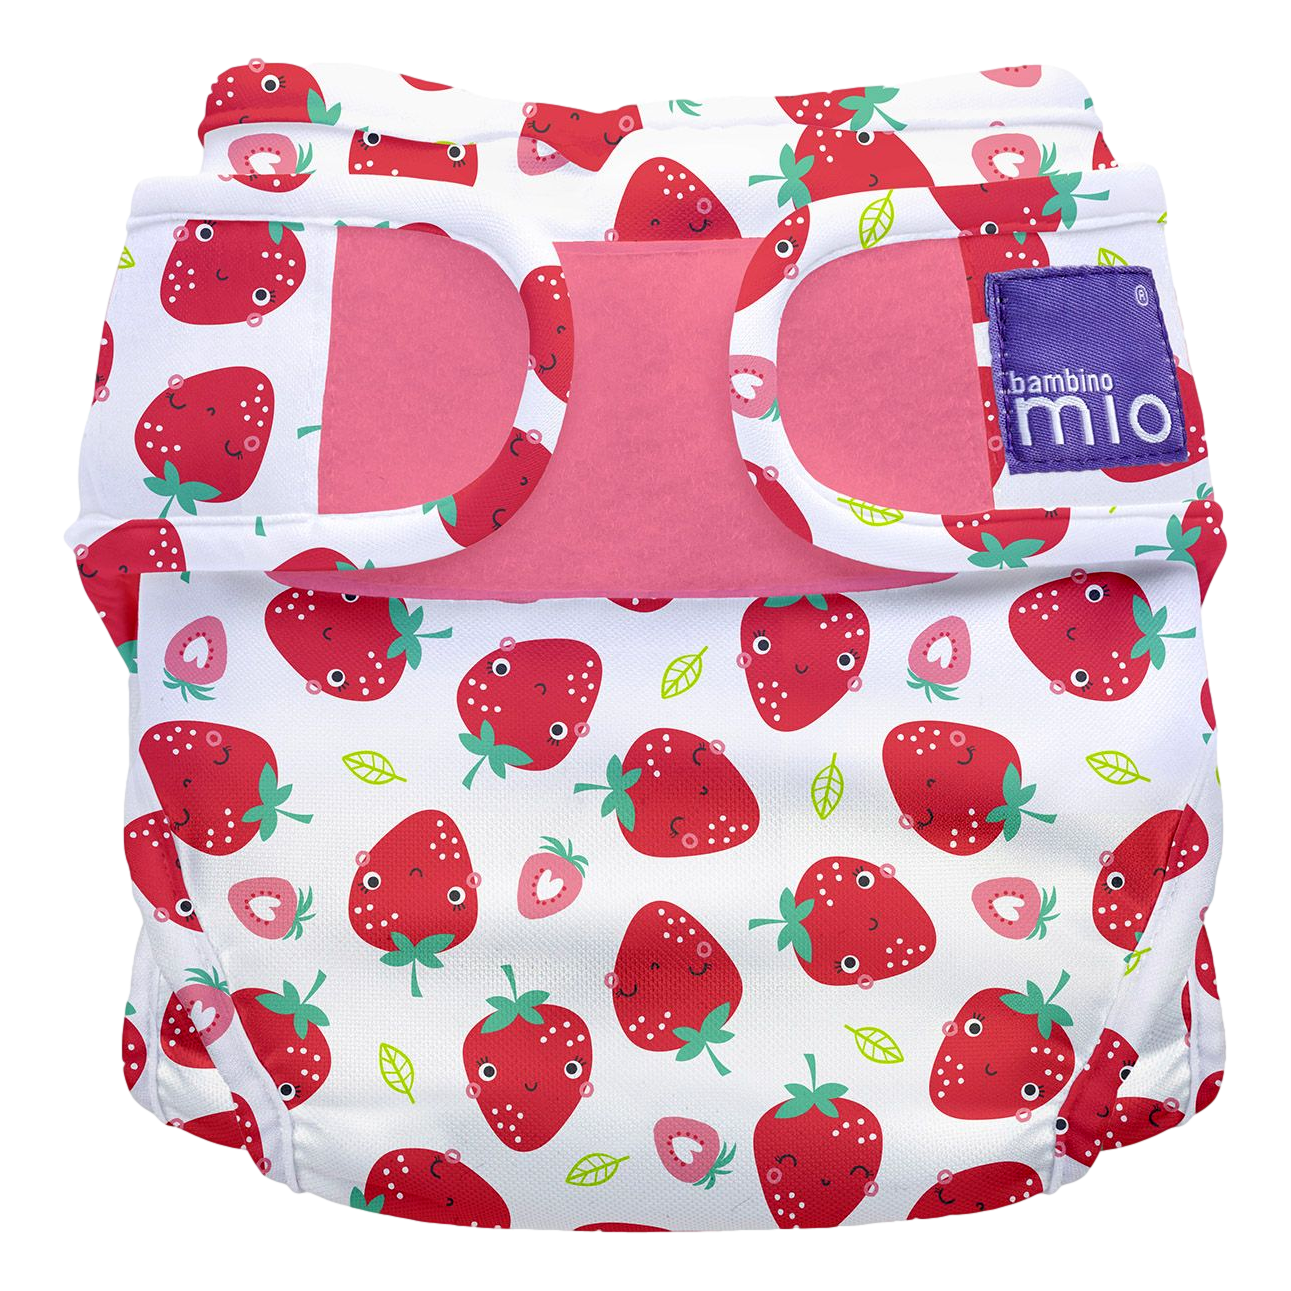 Bambino Mioduo Miosoft – Strawberry Cream